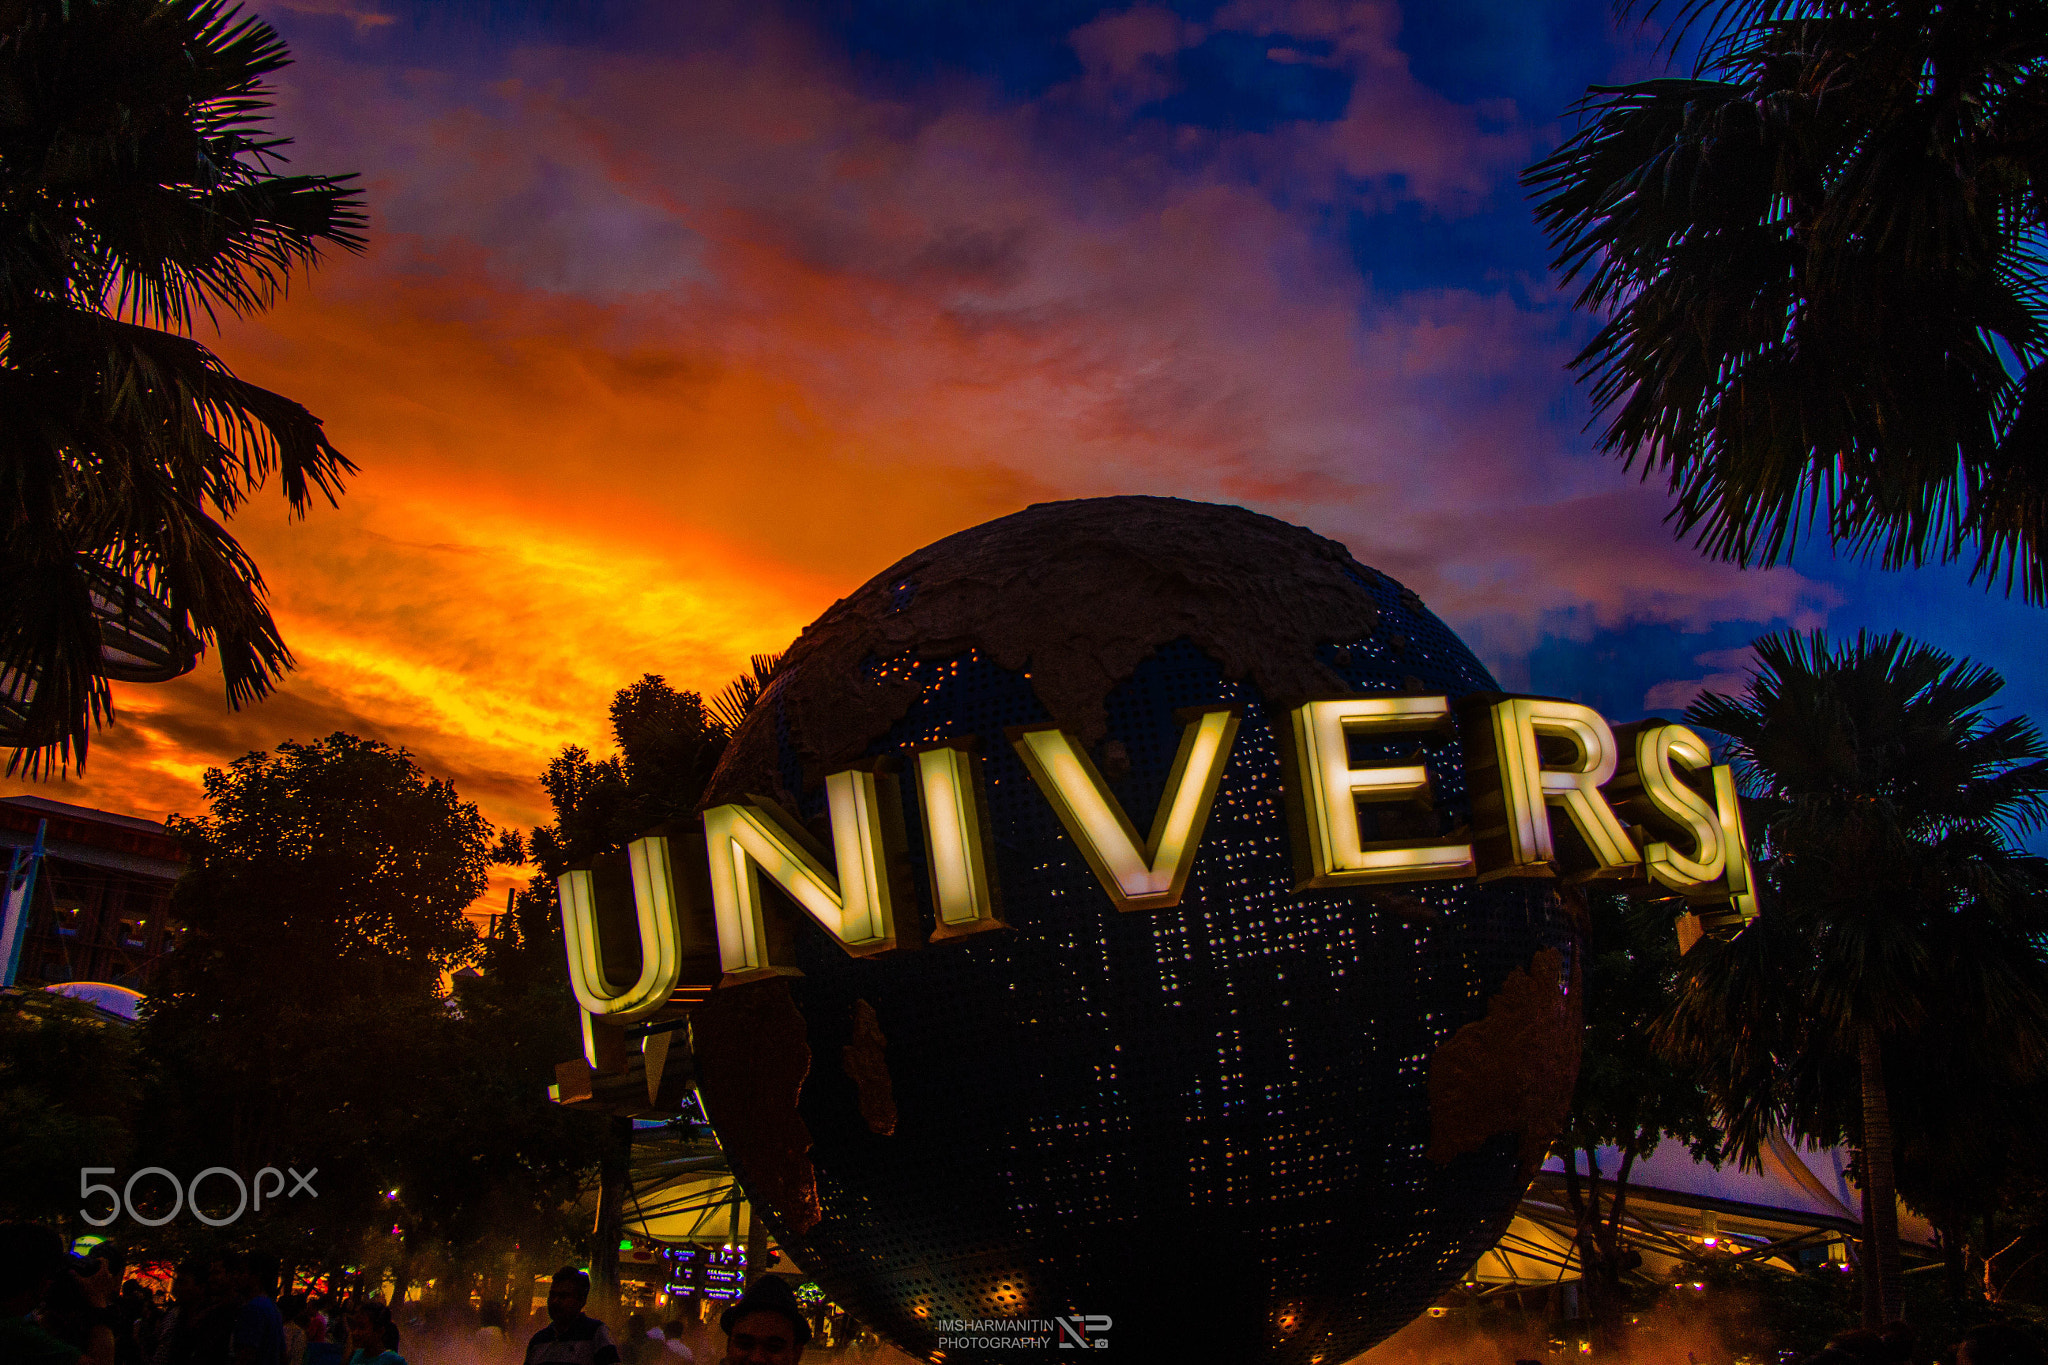 Beautiful sunset at Universal Studio, Singapore